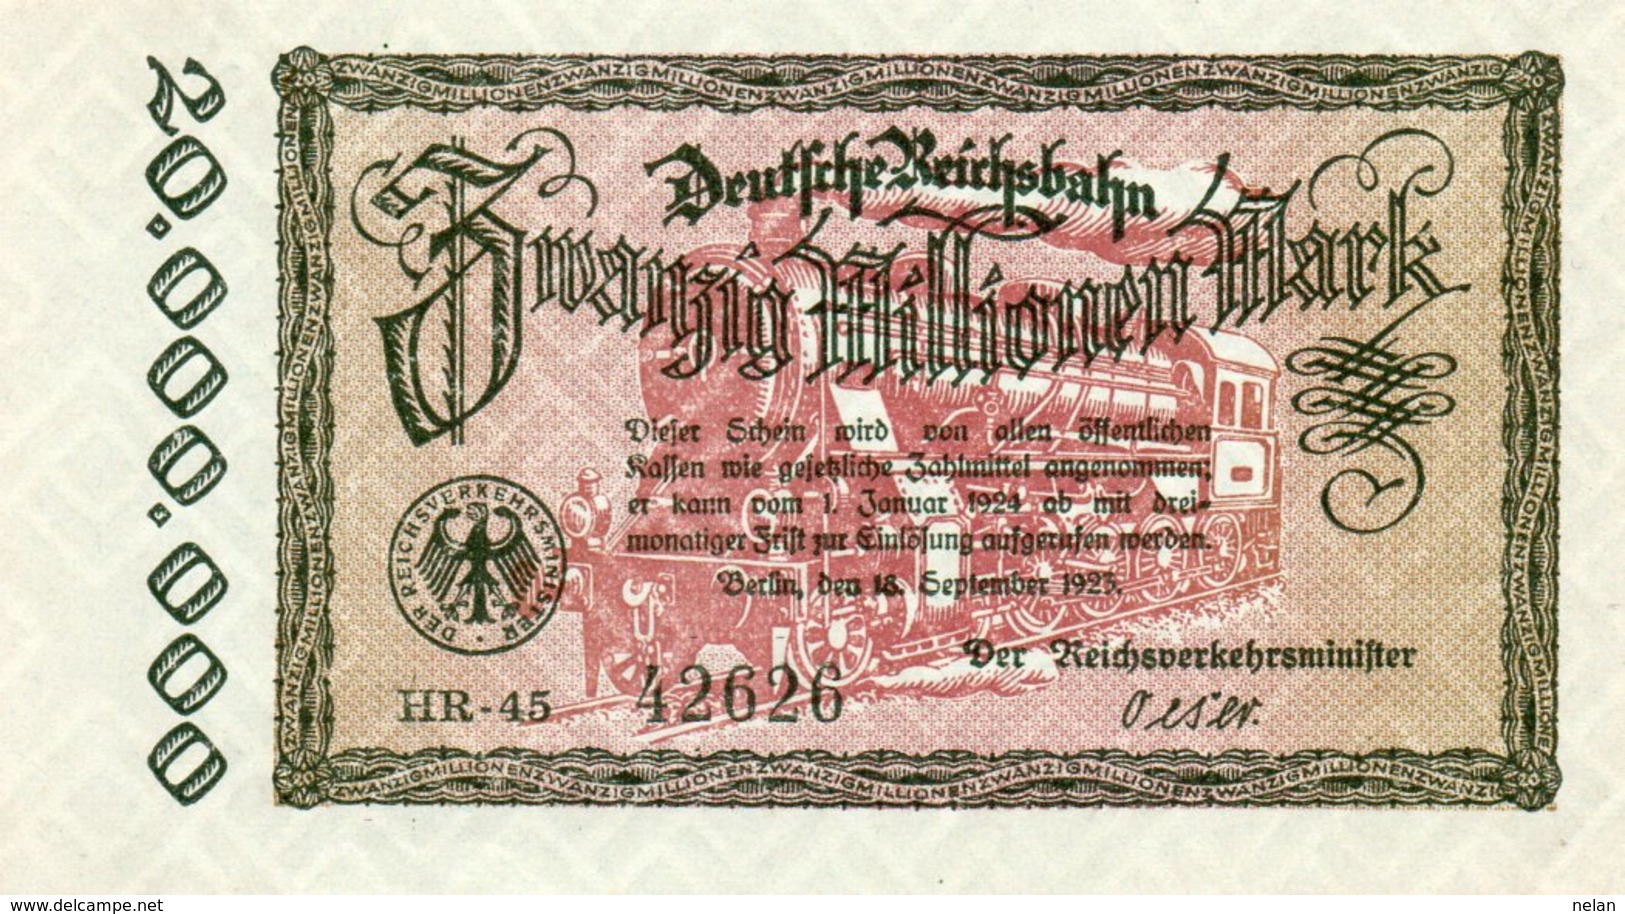 GERMANY-20 MILLIONEN MARK 1923  P-S1015.3  UNC  UNIFACE  SERIE HR-45  42626 - 20 Millionen Mark